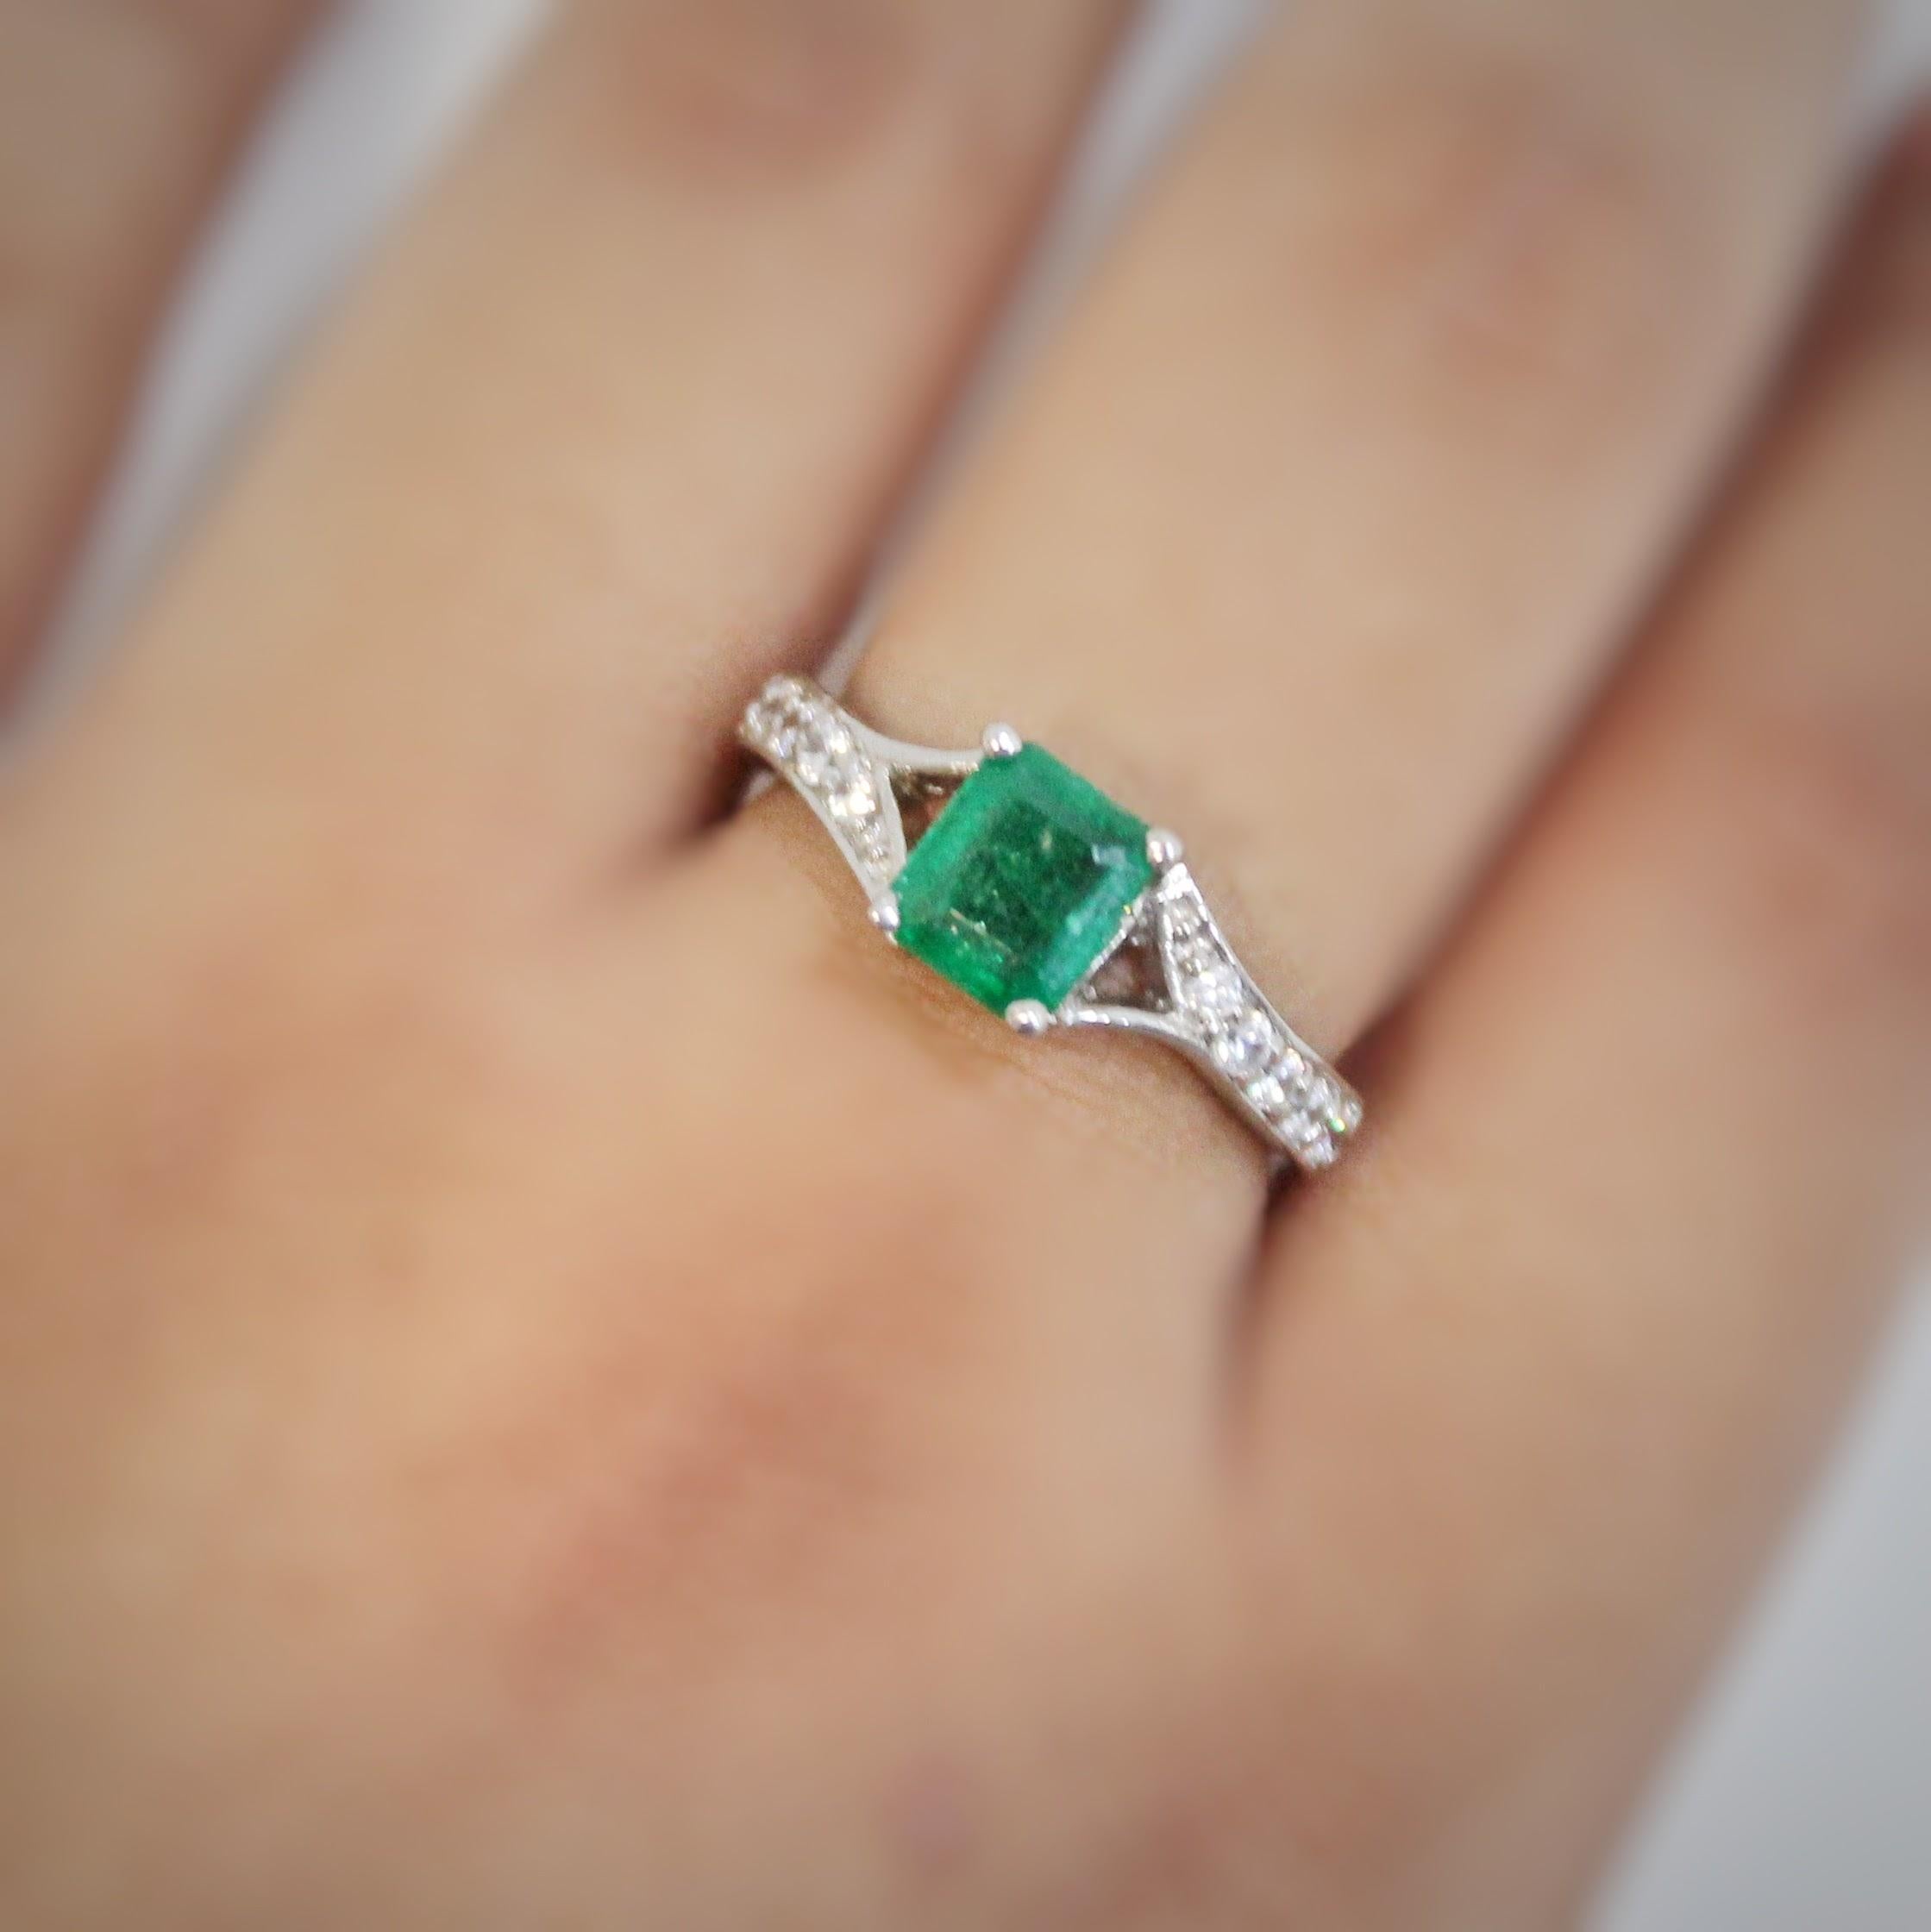 Emerald Cut 1.11 Carat Natural Emerald Ring